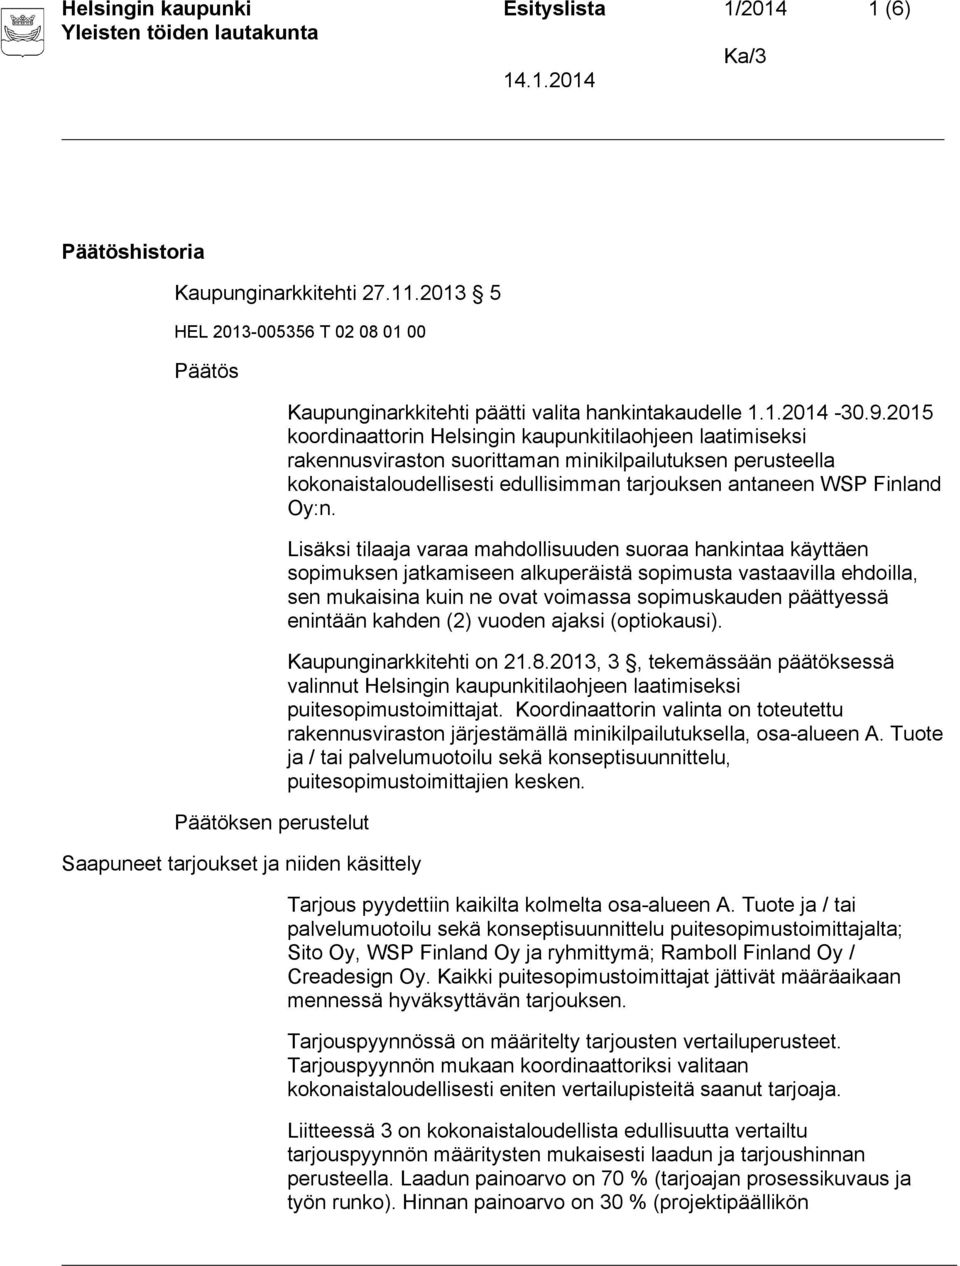 2015 koordinaattorin Helsingin kaupunkitilaohjeen laatimiseksi rakennusviraston suorittaman minikilpailutuksen perusteella kokonaistaloudellisesti edullisimman tarjouksen antaneen WSP Finland Oy:n.